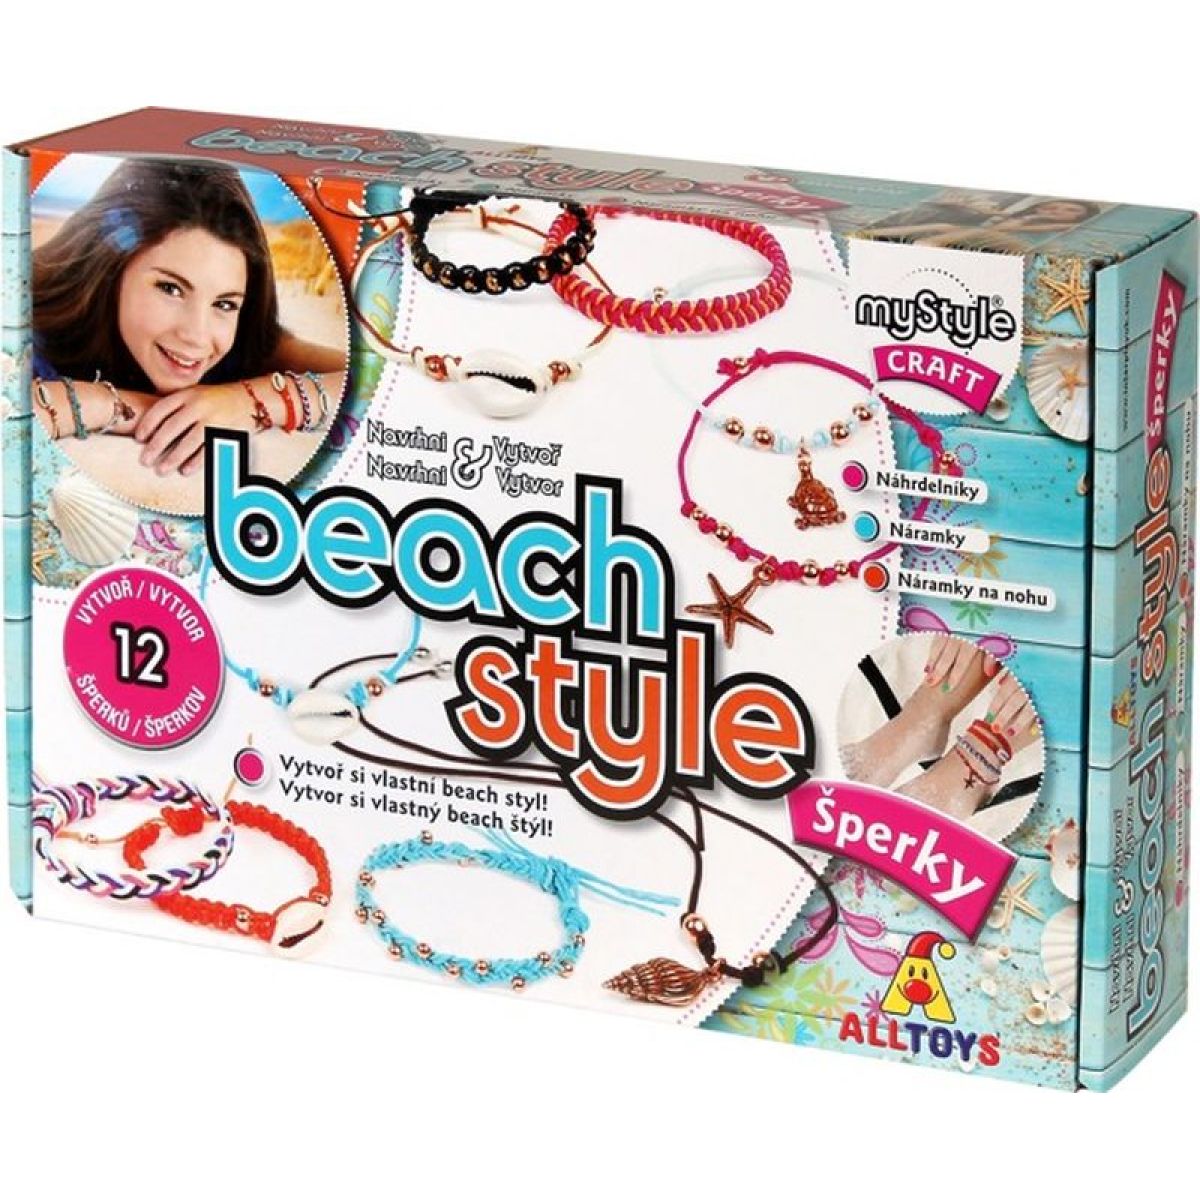 Alltoys MyStyle Beach style šperky